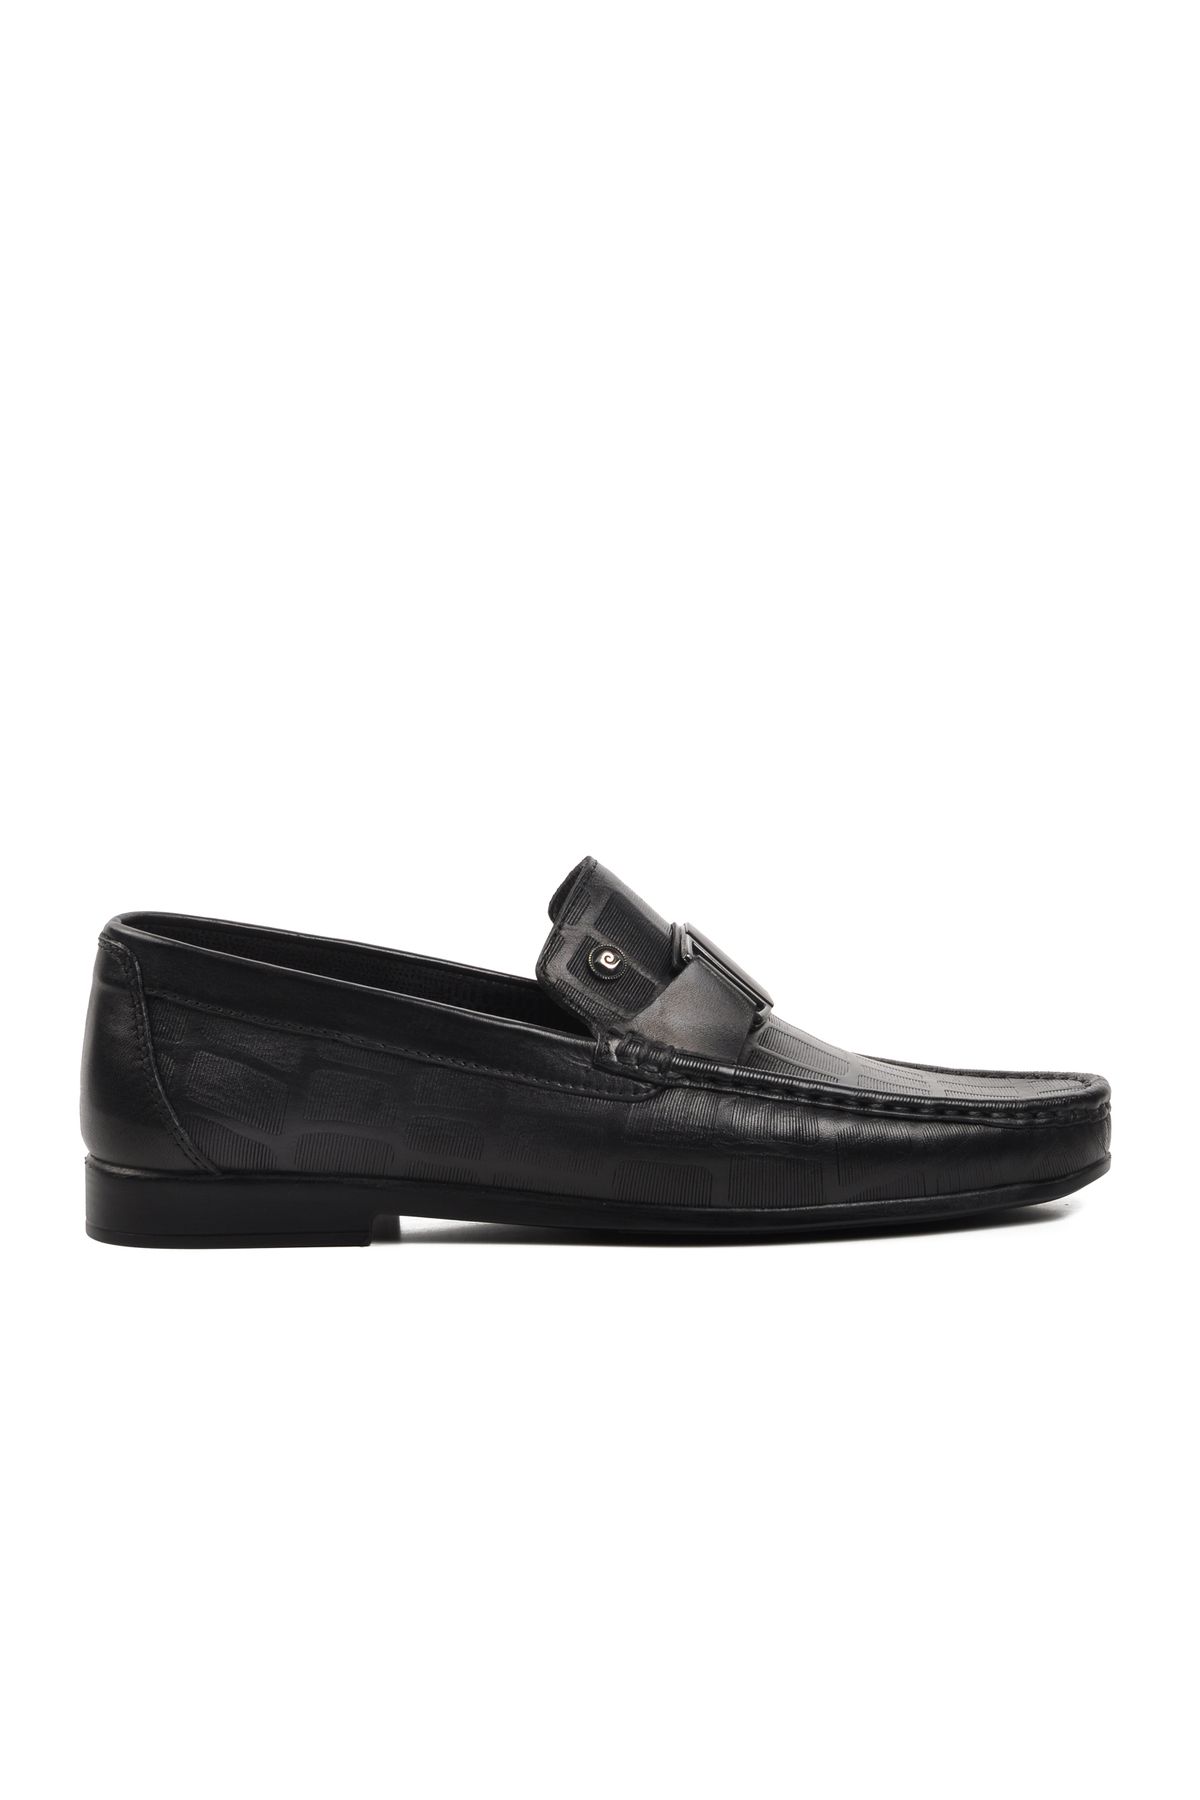 Pierre Cardin 25104 Siyah Hakiki Deri Erkek Loafer Ayakkabı